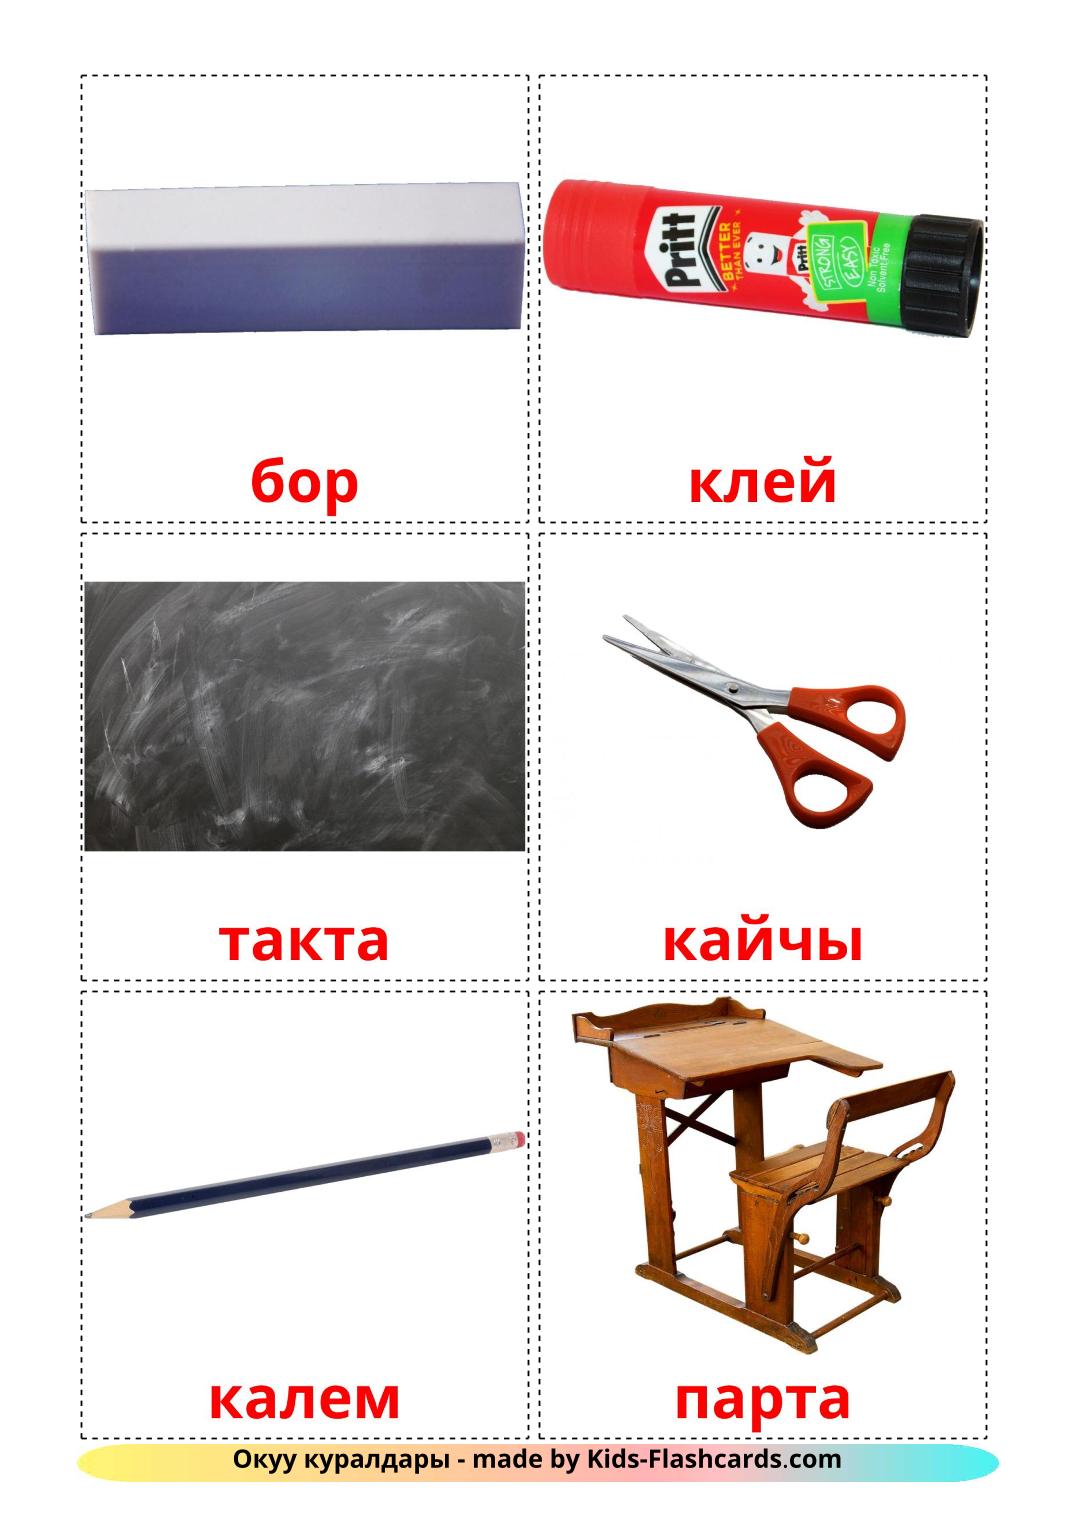 Objets de la classe - 36 Flashcards kirghize imprimables gratuitement